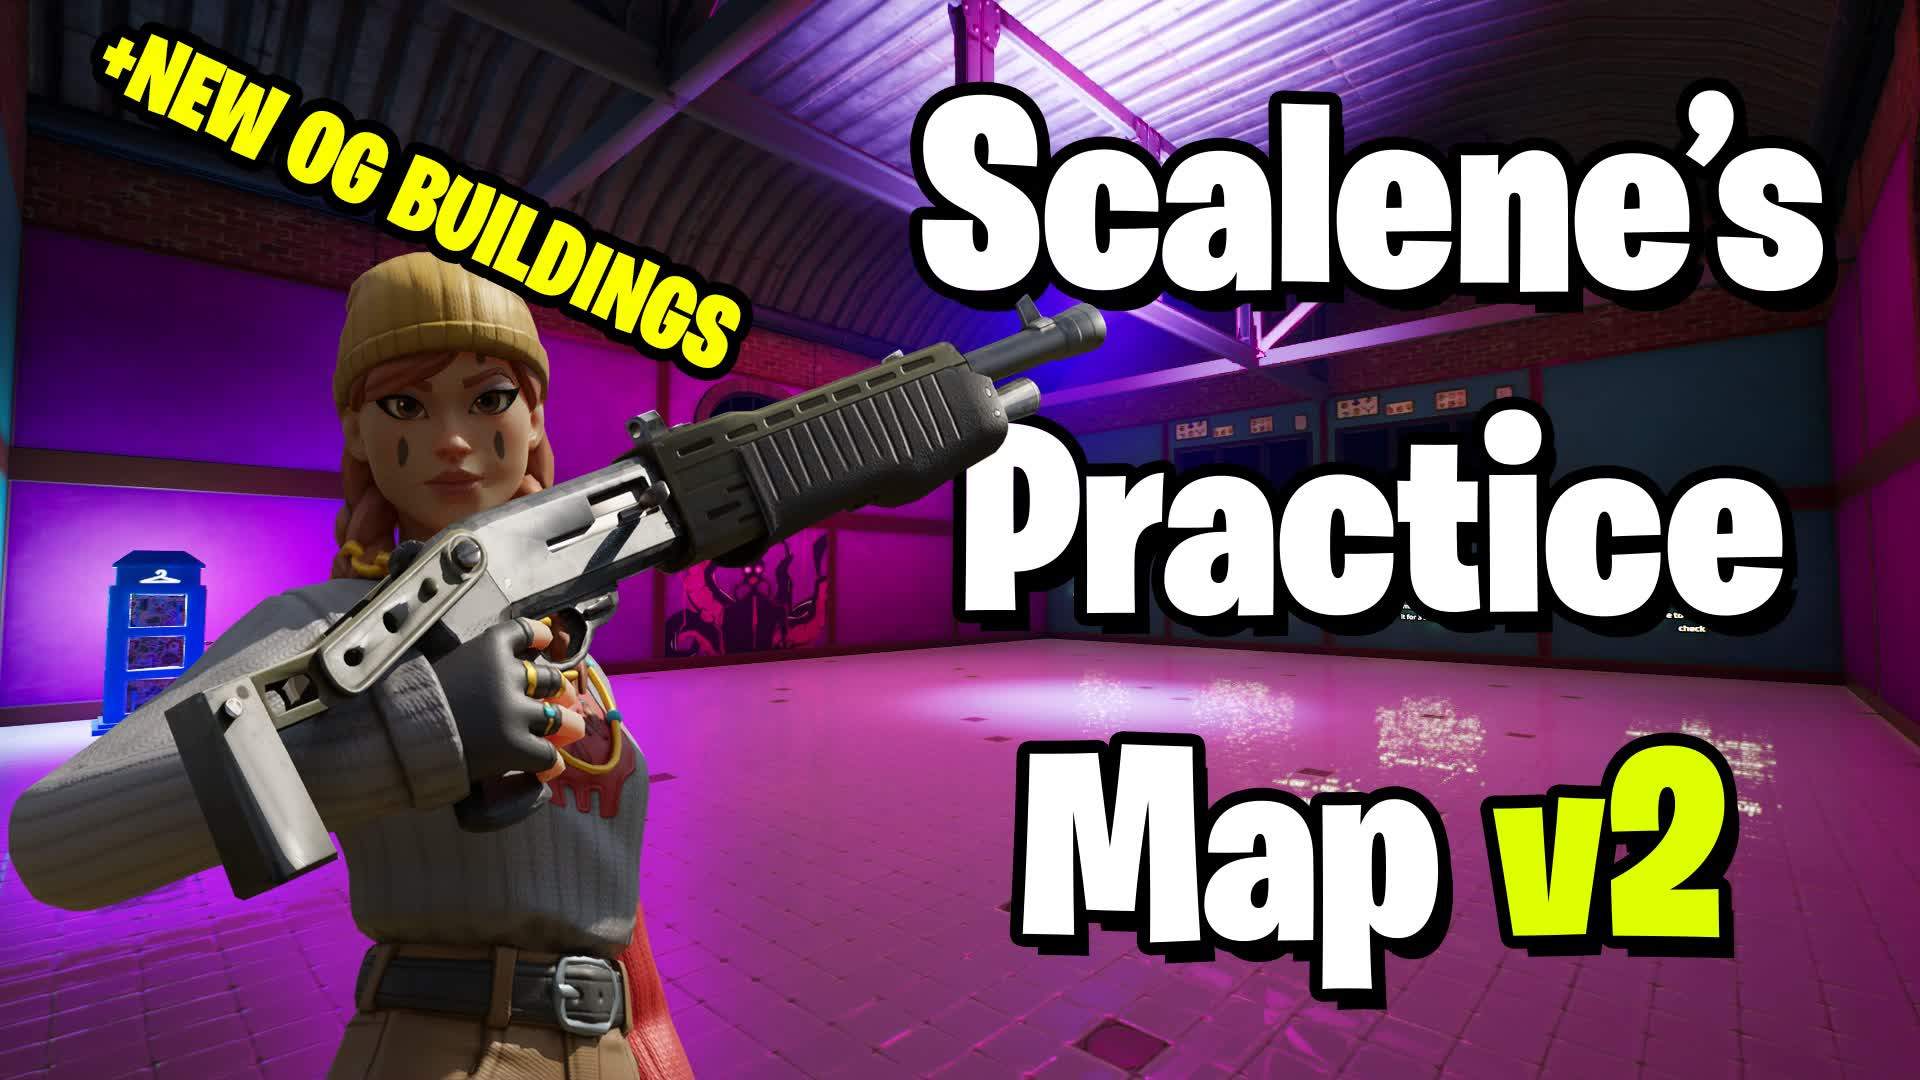 Scalene's Practice Map v2